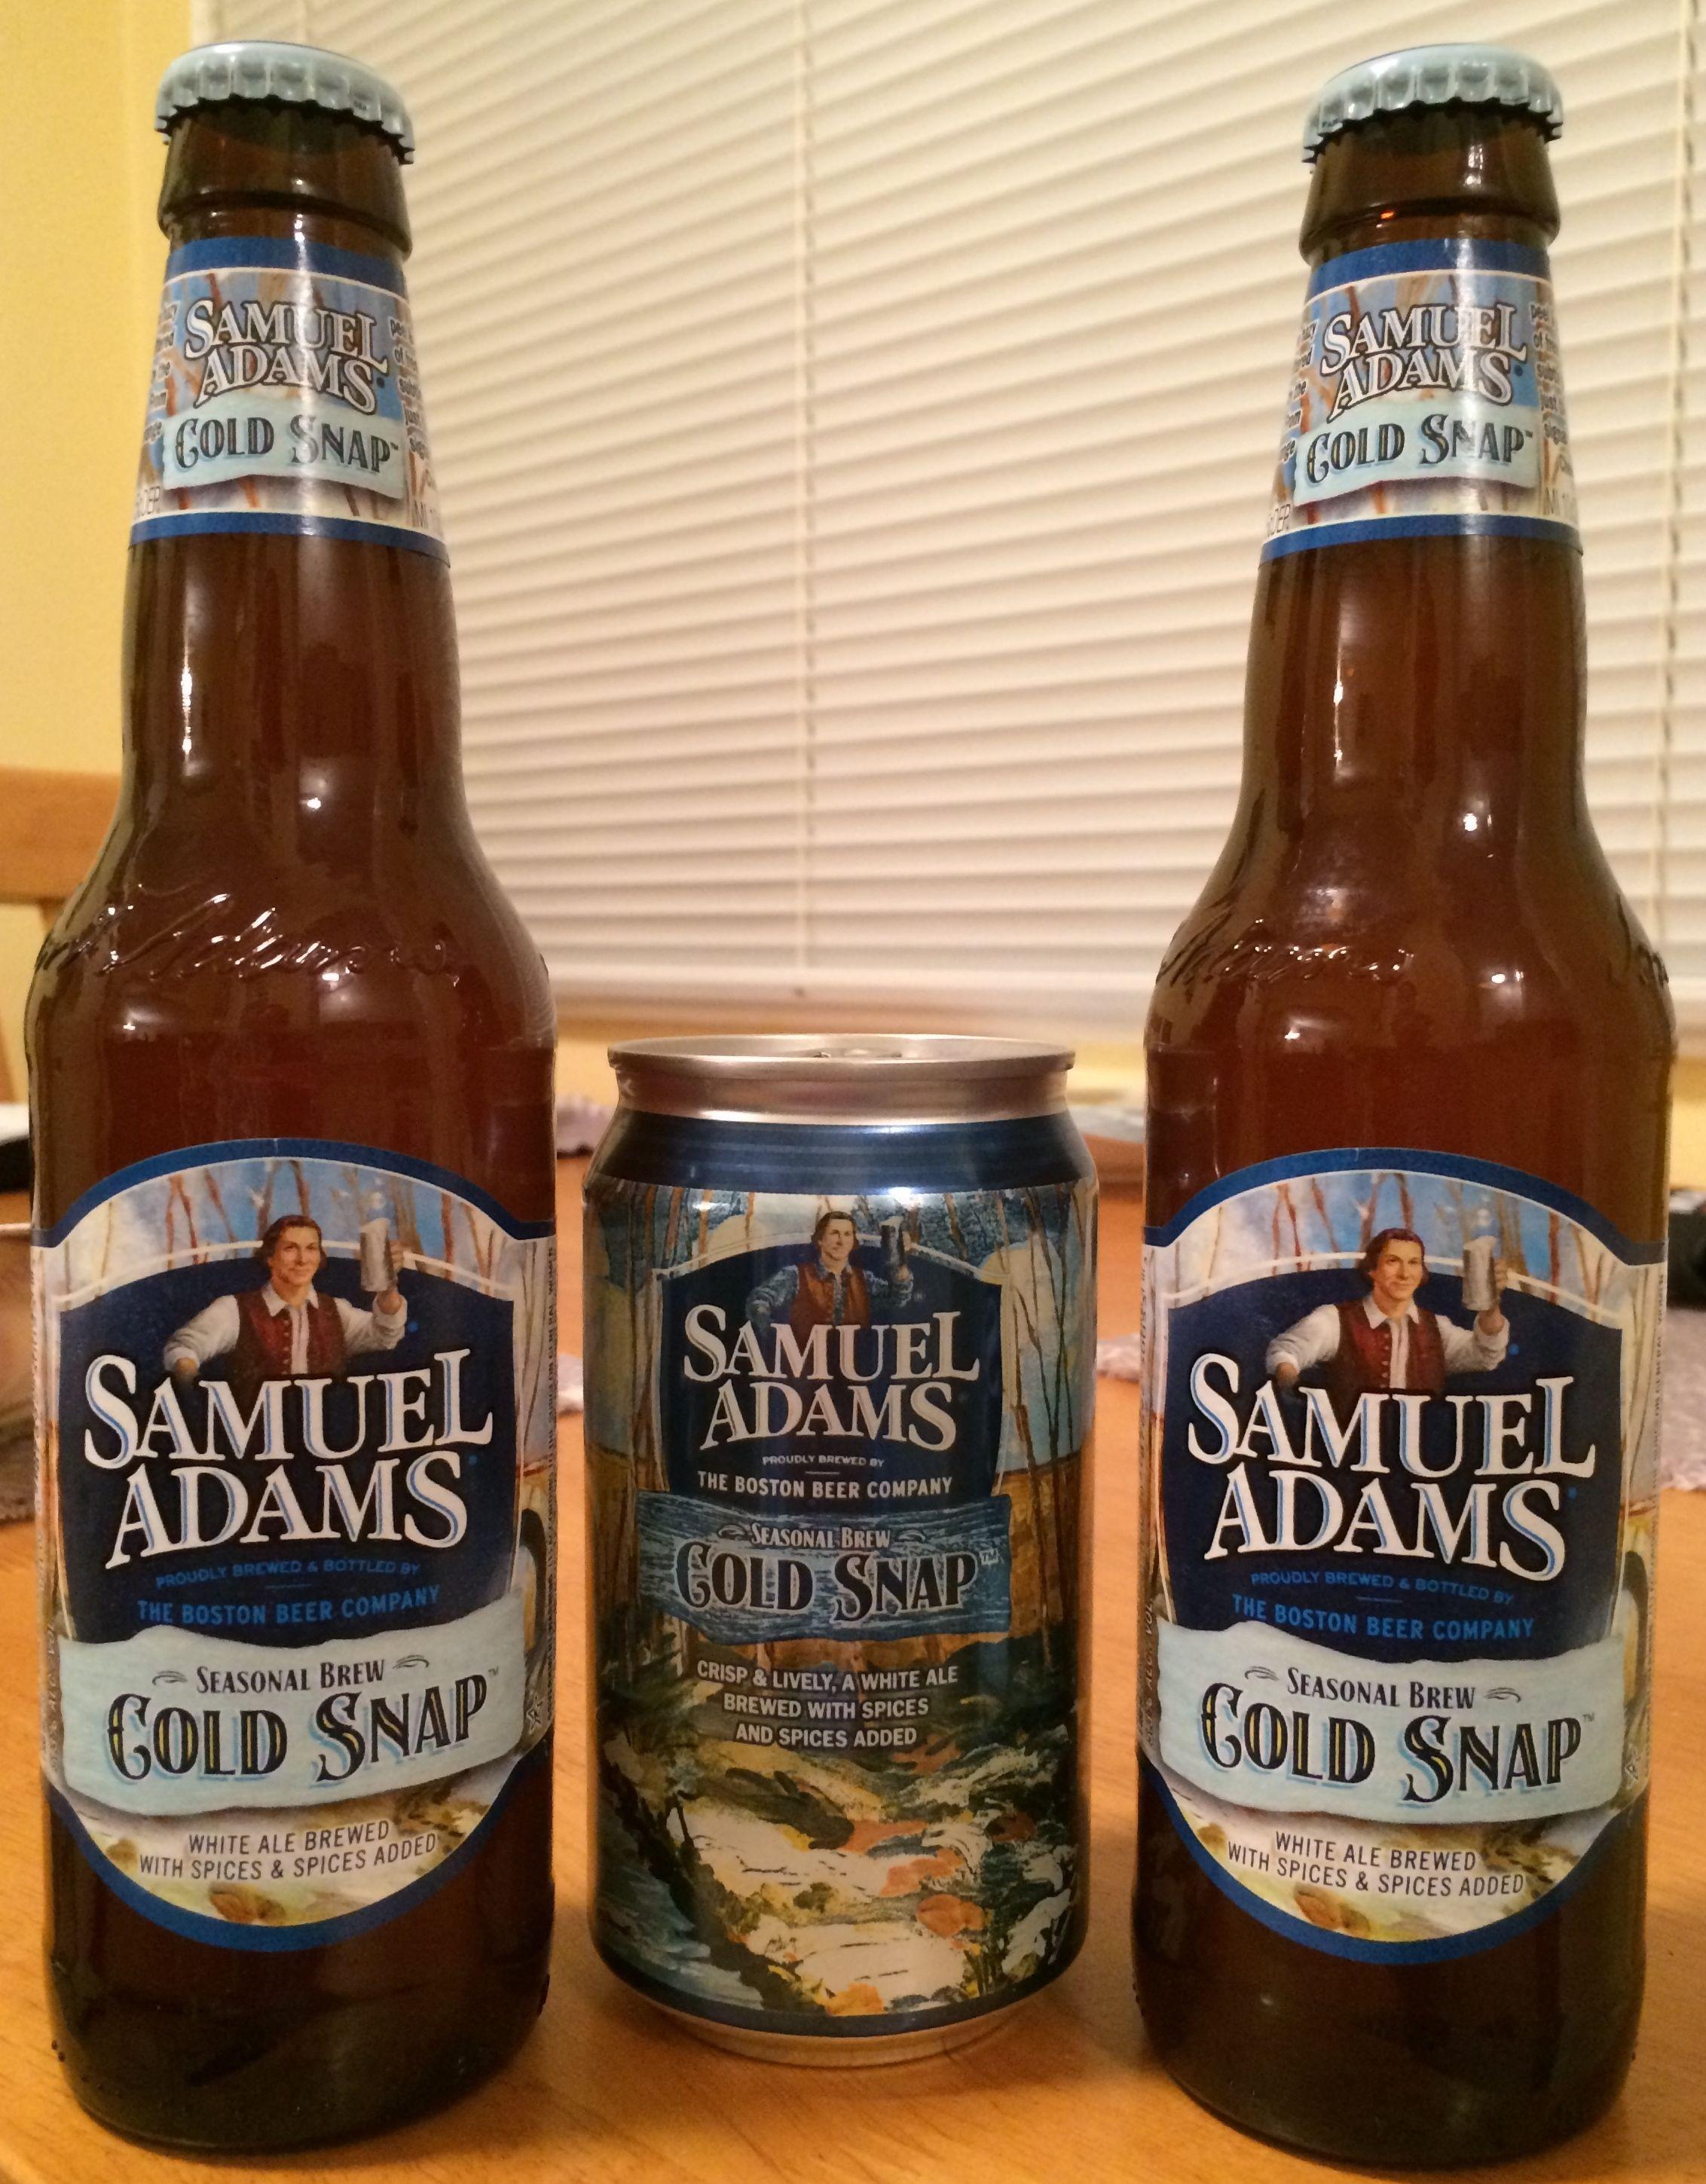 Samuel Adams Seasonal Beer Logo - Samuel Adams Releases Cold Snap as New Spring Seasonal